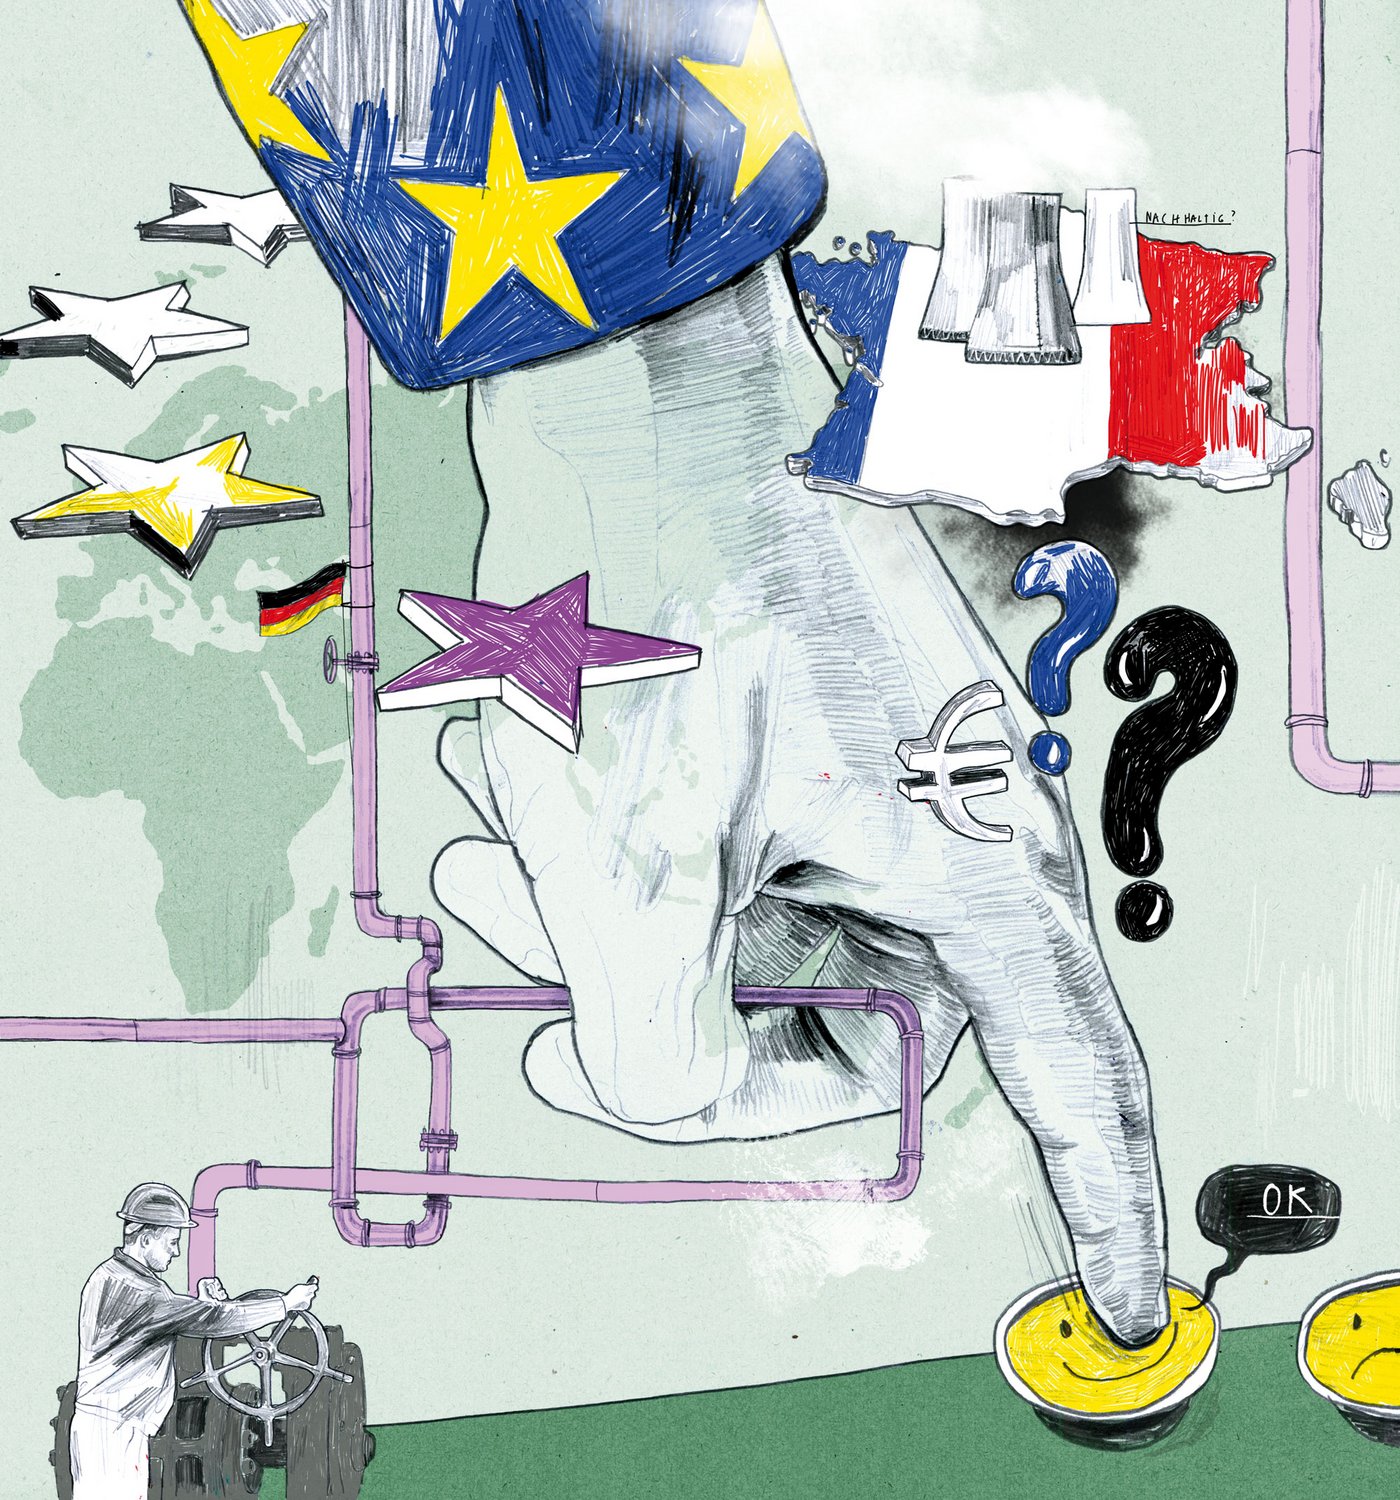 Illustration von EU-Sternen, des französischen Landstrichs auf dem Kernkraftwerke stehen, Pipelines an denen eine Deutschlandflagge hängt und einer großen Hand, die aus einem EU-farbenen Blazer ragt und einen Knopf betätigt. 